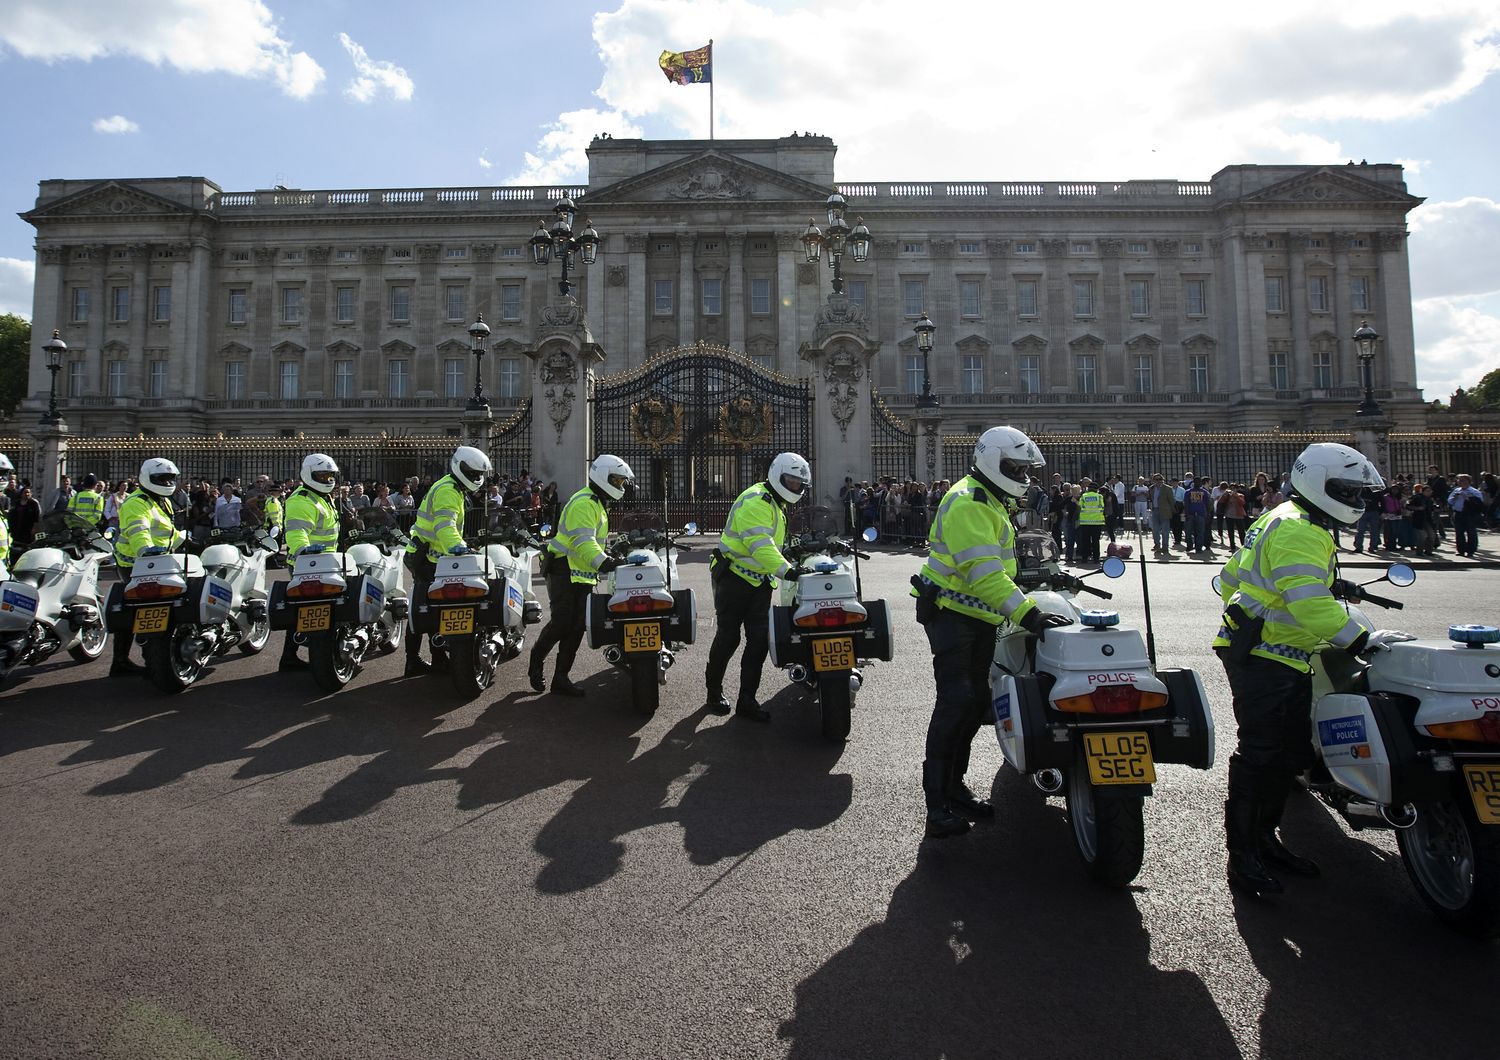 Polizia all'esterno di Buckingham Palace (immagine di repertorio)